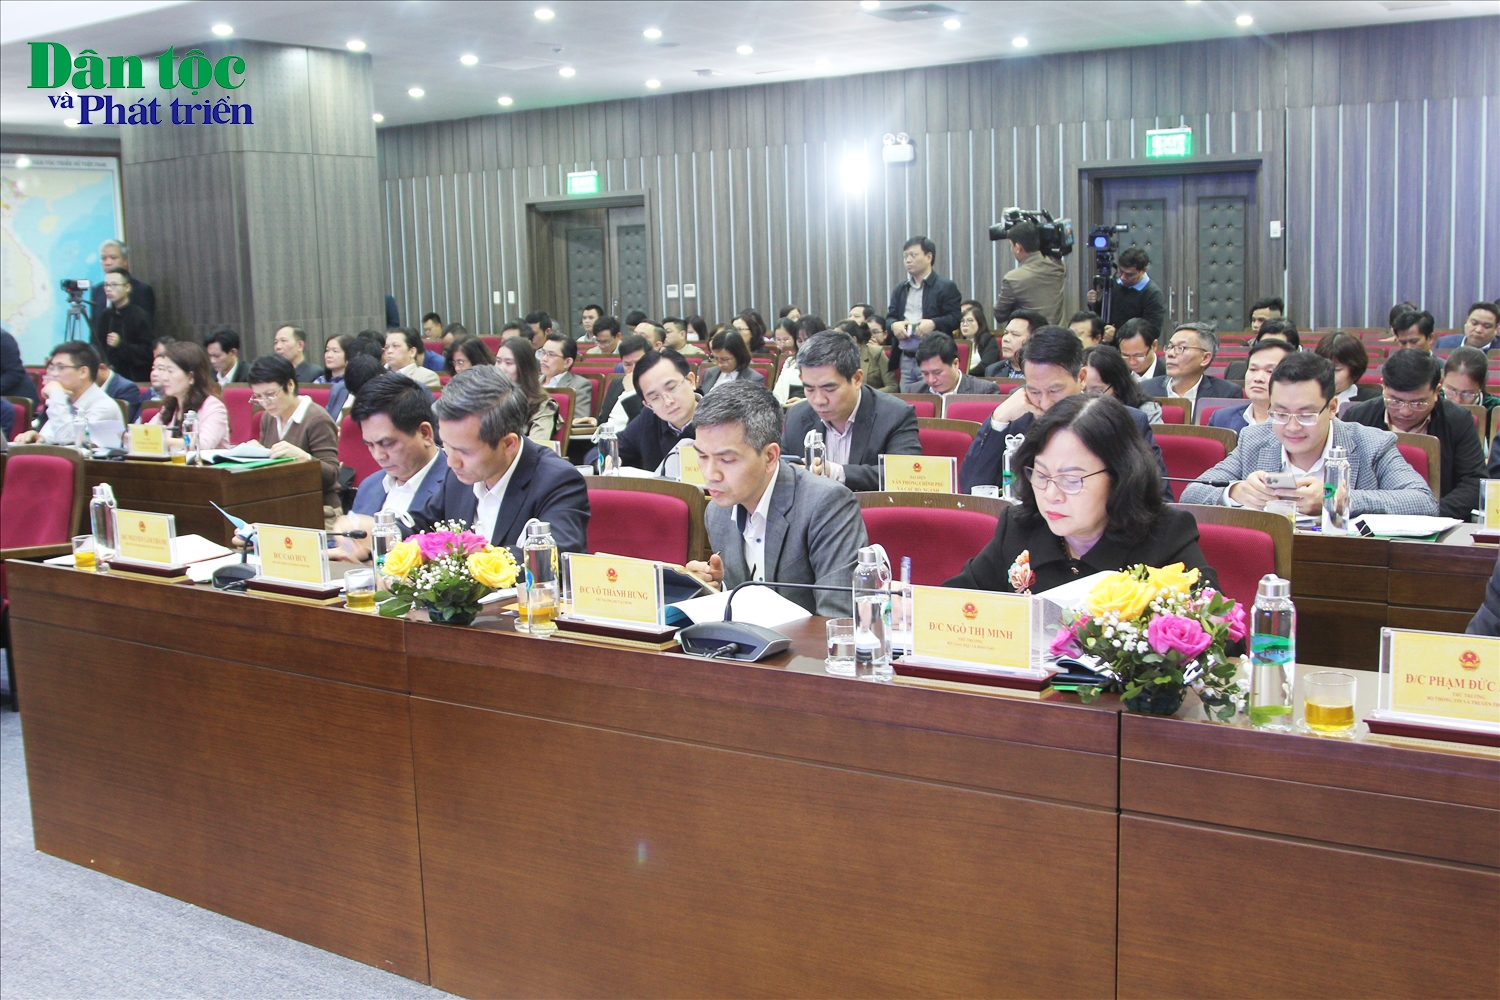 Các đại biểu tham dự buổi làm việc của Phó Thủ tướng Chính phủ tại UBDT